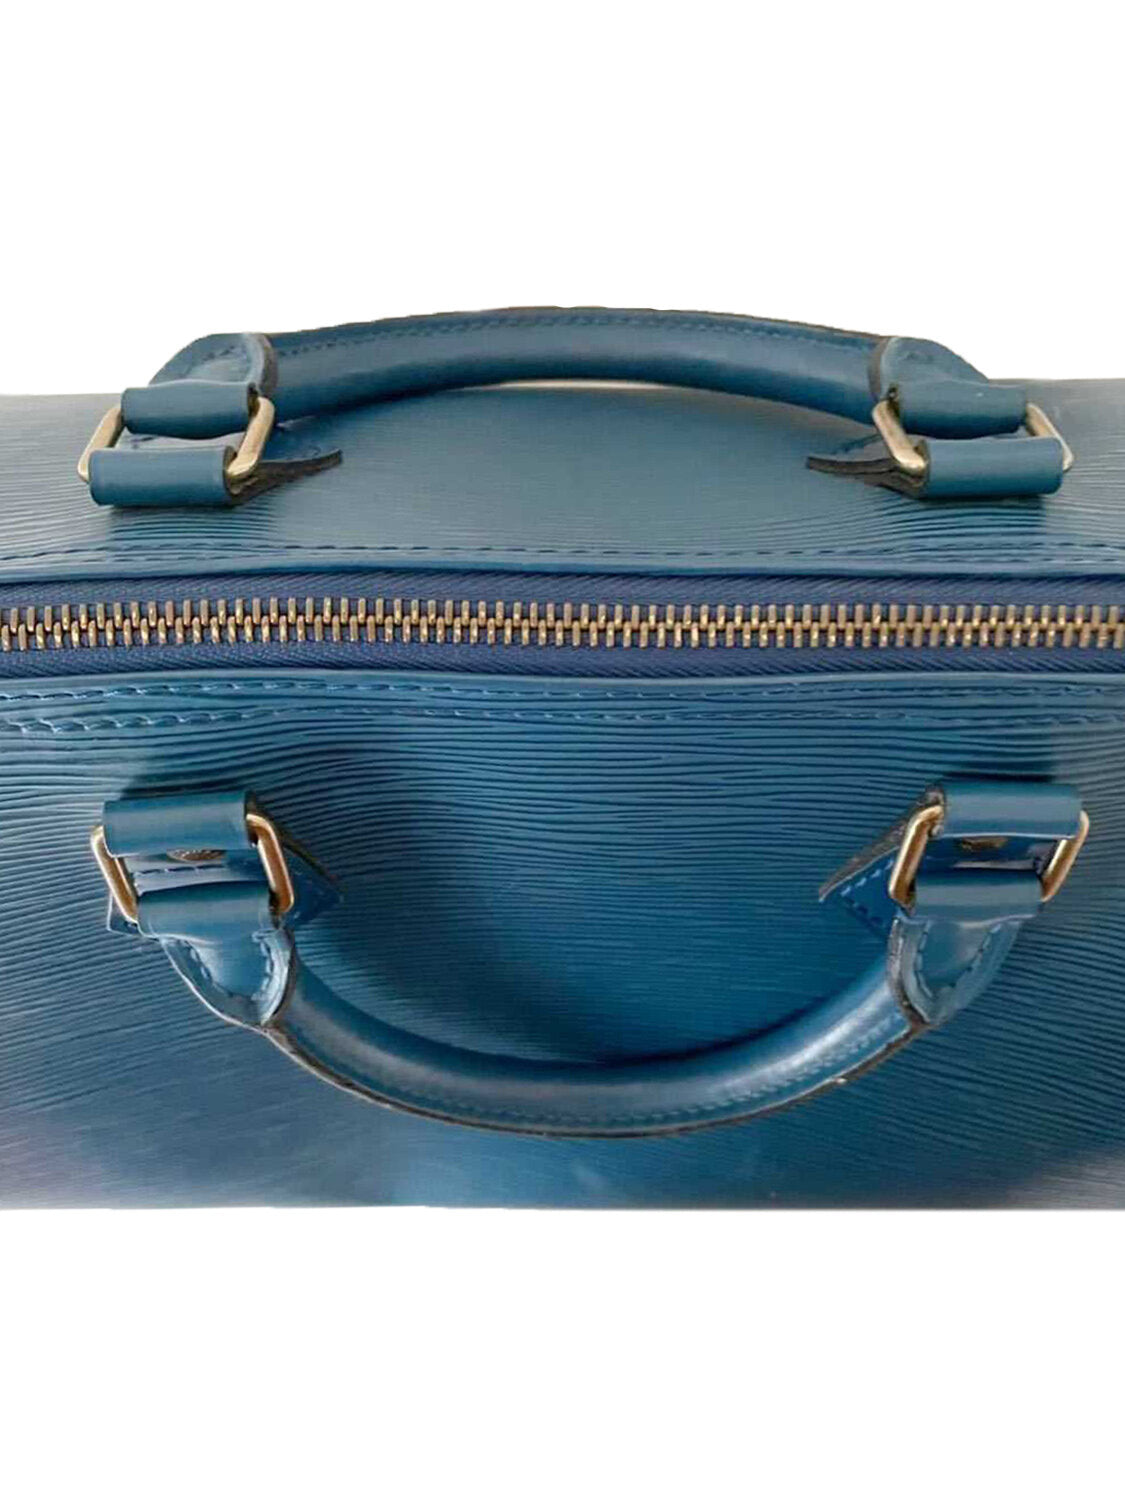 Louis Vuitton Speedy 30 blue epi leather + monogram / orange shoulder strap  Brown ref.124252 - Joli Closet